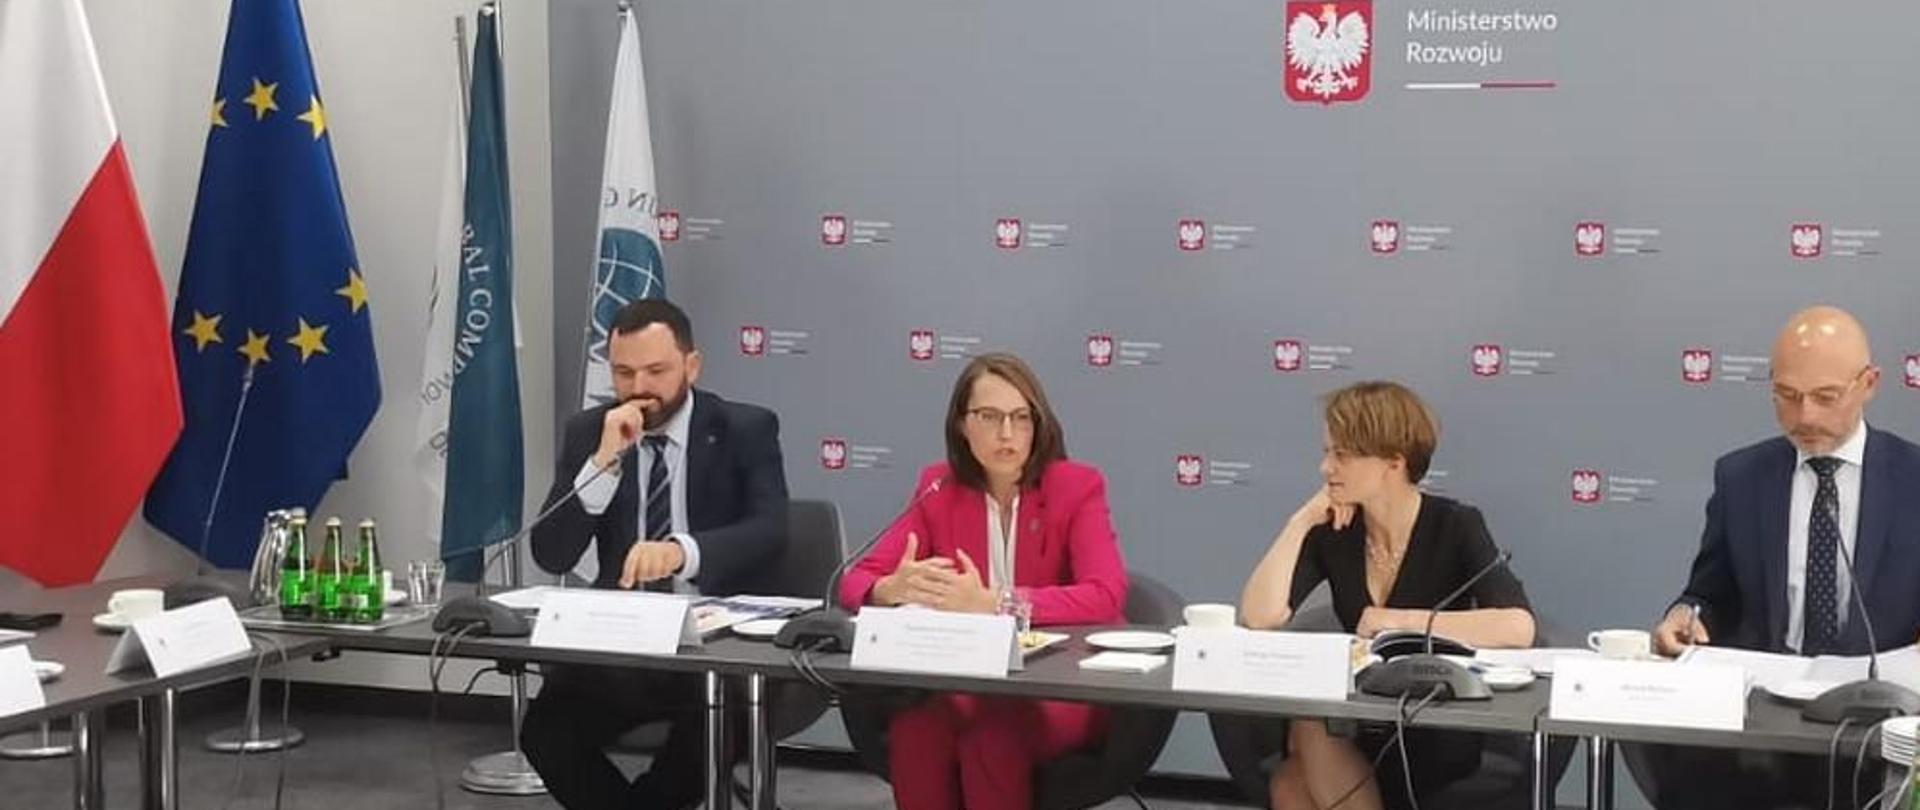 Szef KAS Magdalena Rzeczkowska, minister rozwoju Jadwiga Emilewicz oraz minister klimatu Michał Kurtyka przy stole prezydialnym podczas spotkania.